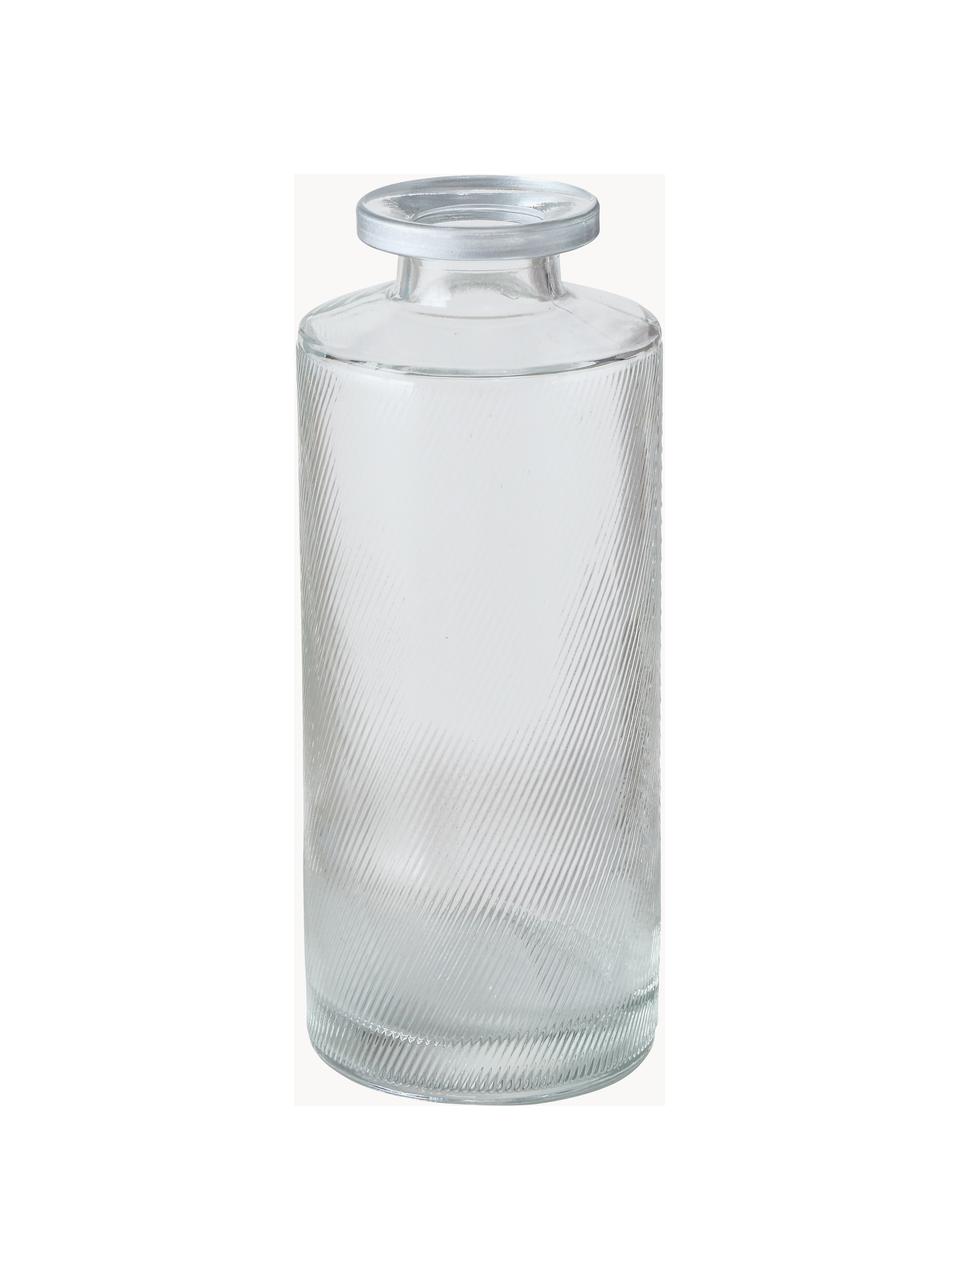 Kleine Vasen Adore aus Glas, 3er-Set, Glas, Transparent, Silberfarben, Ø 5 x H 13 cm